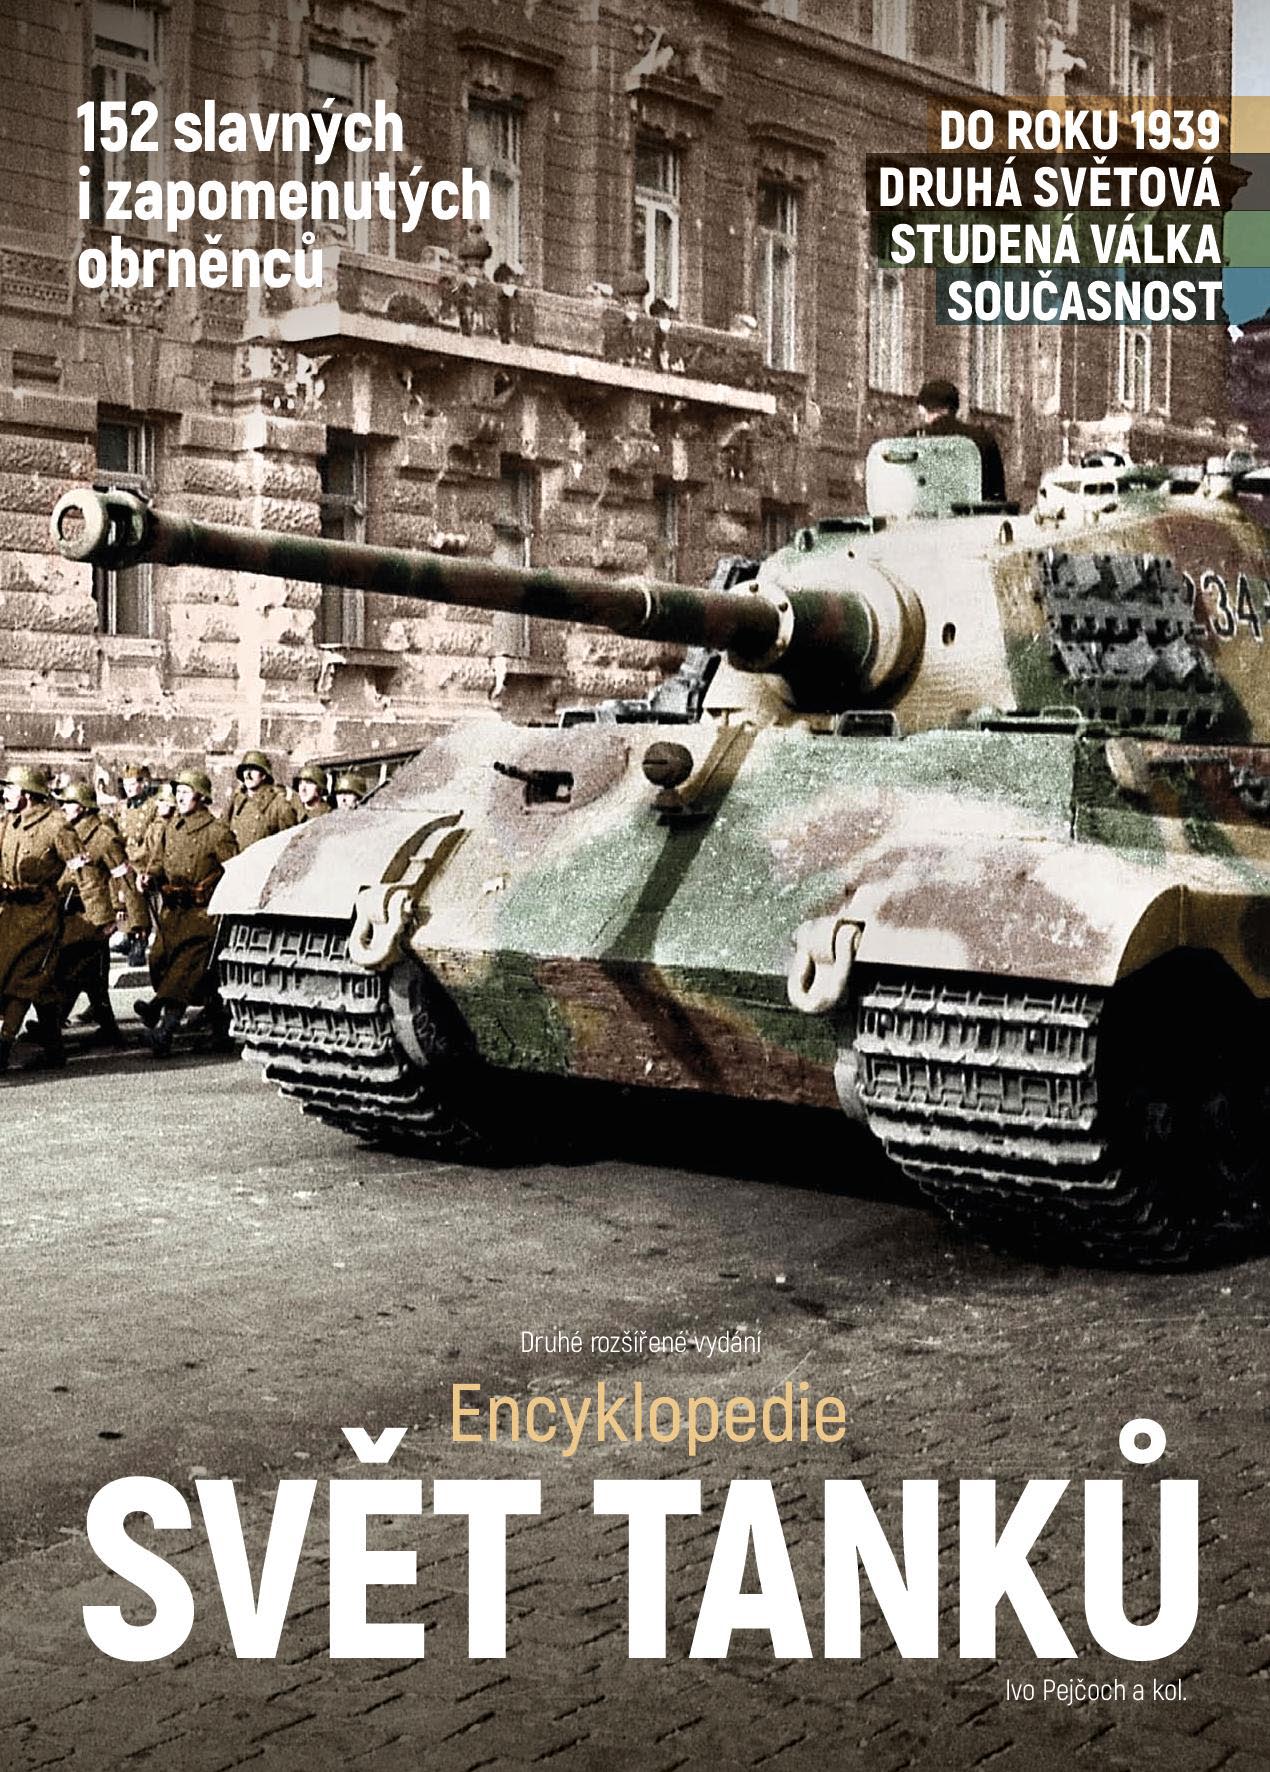 Ivo Pejčoch a kol. – Svět tanků – druhé rozšířené vydání (Encyklopedie)